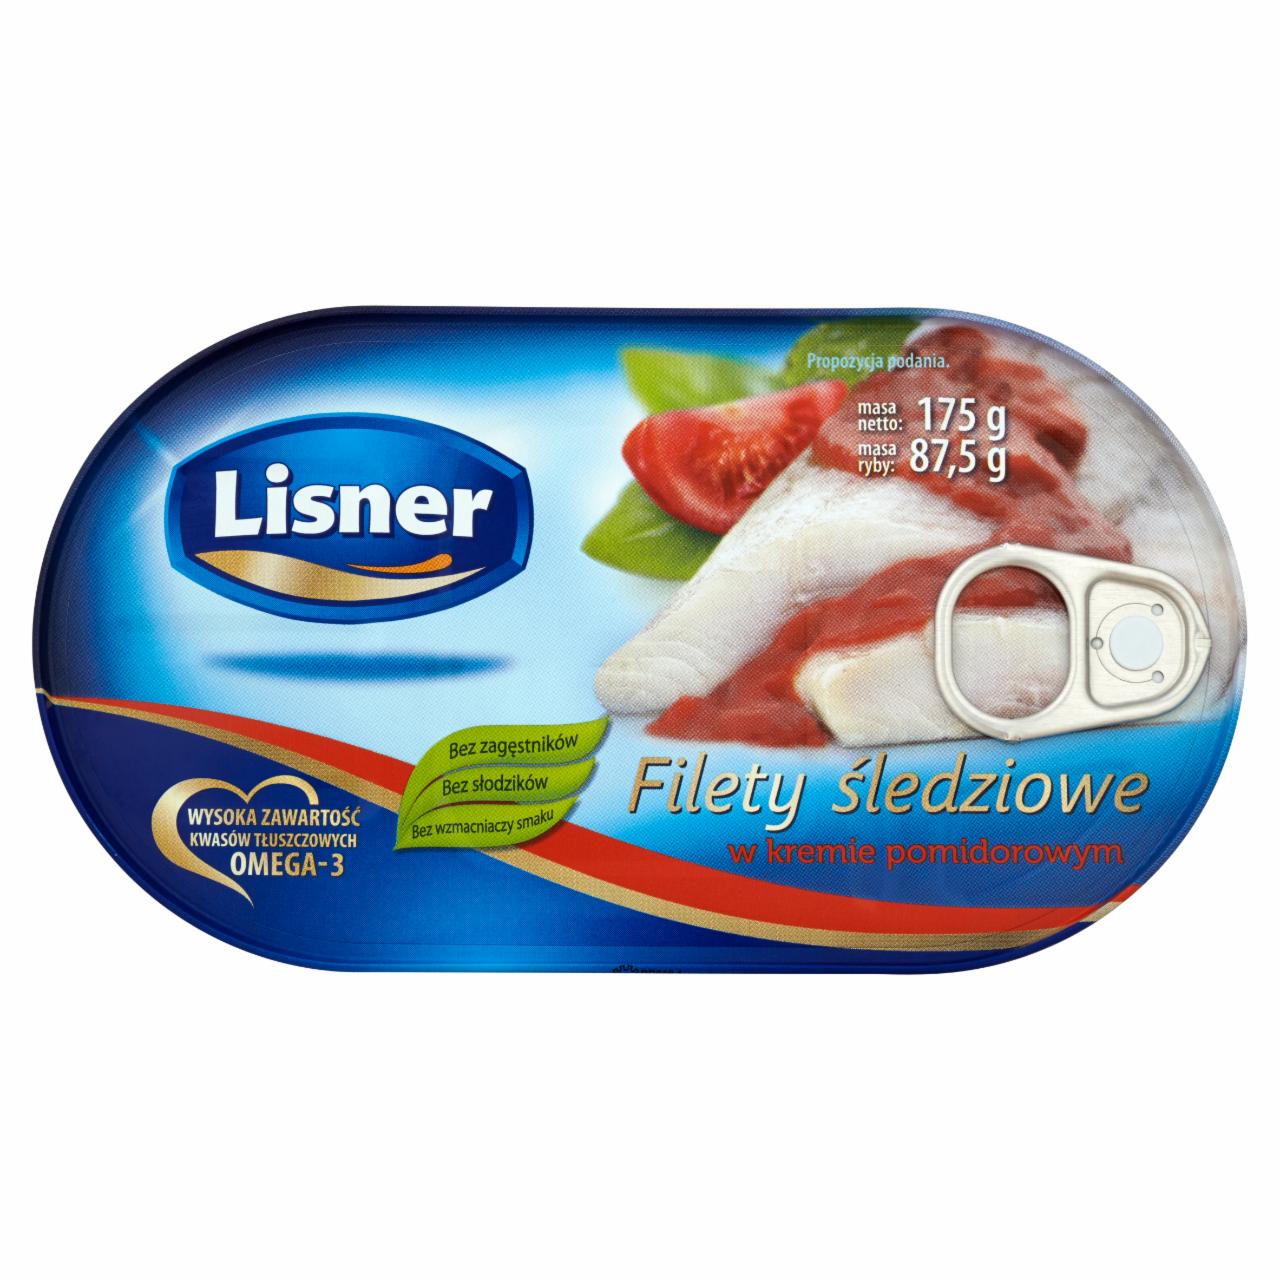 Photo - Lisner Herring Fillets in Tomato Cream 175 g